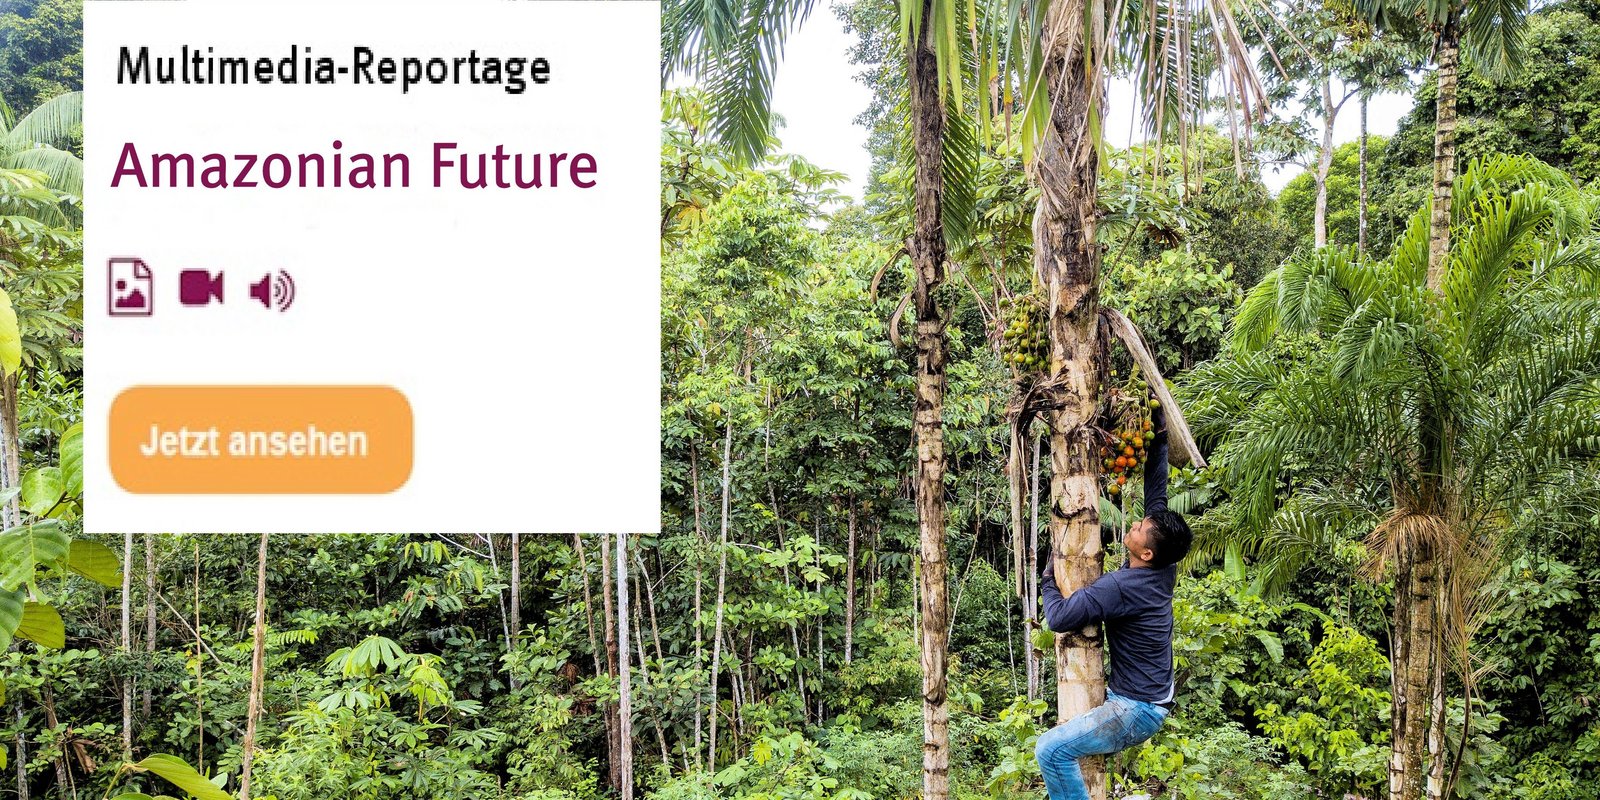 Amazonas Mutlimediareportage - Mann klettert Baum hoch